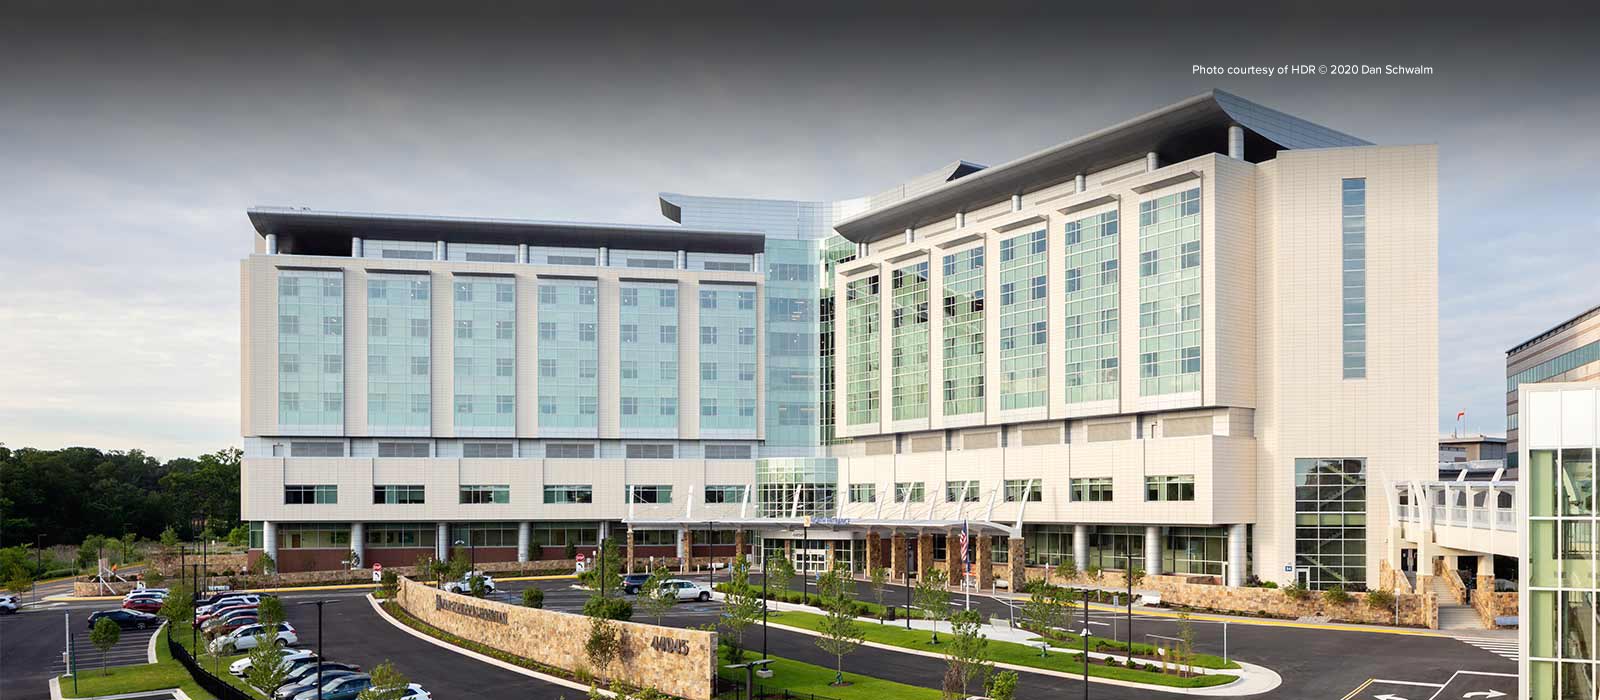 Inova Loudoun Hospital complex located in Loudoun County, Virginia